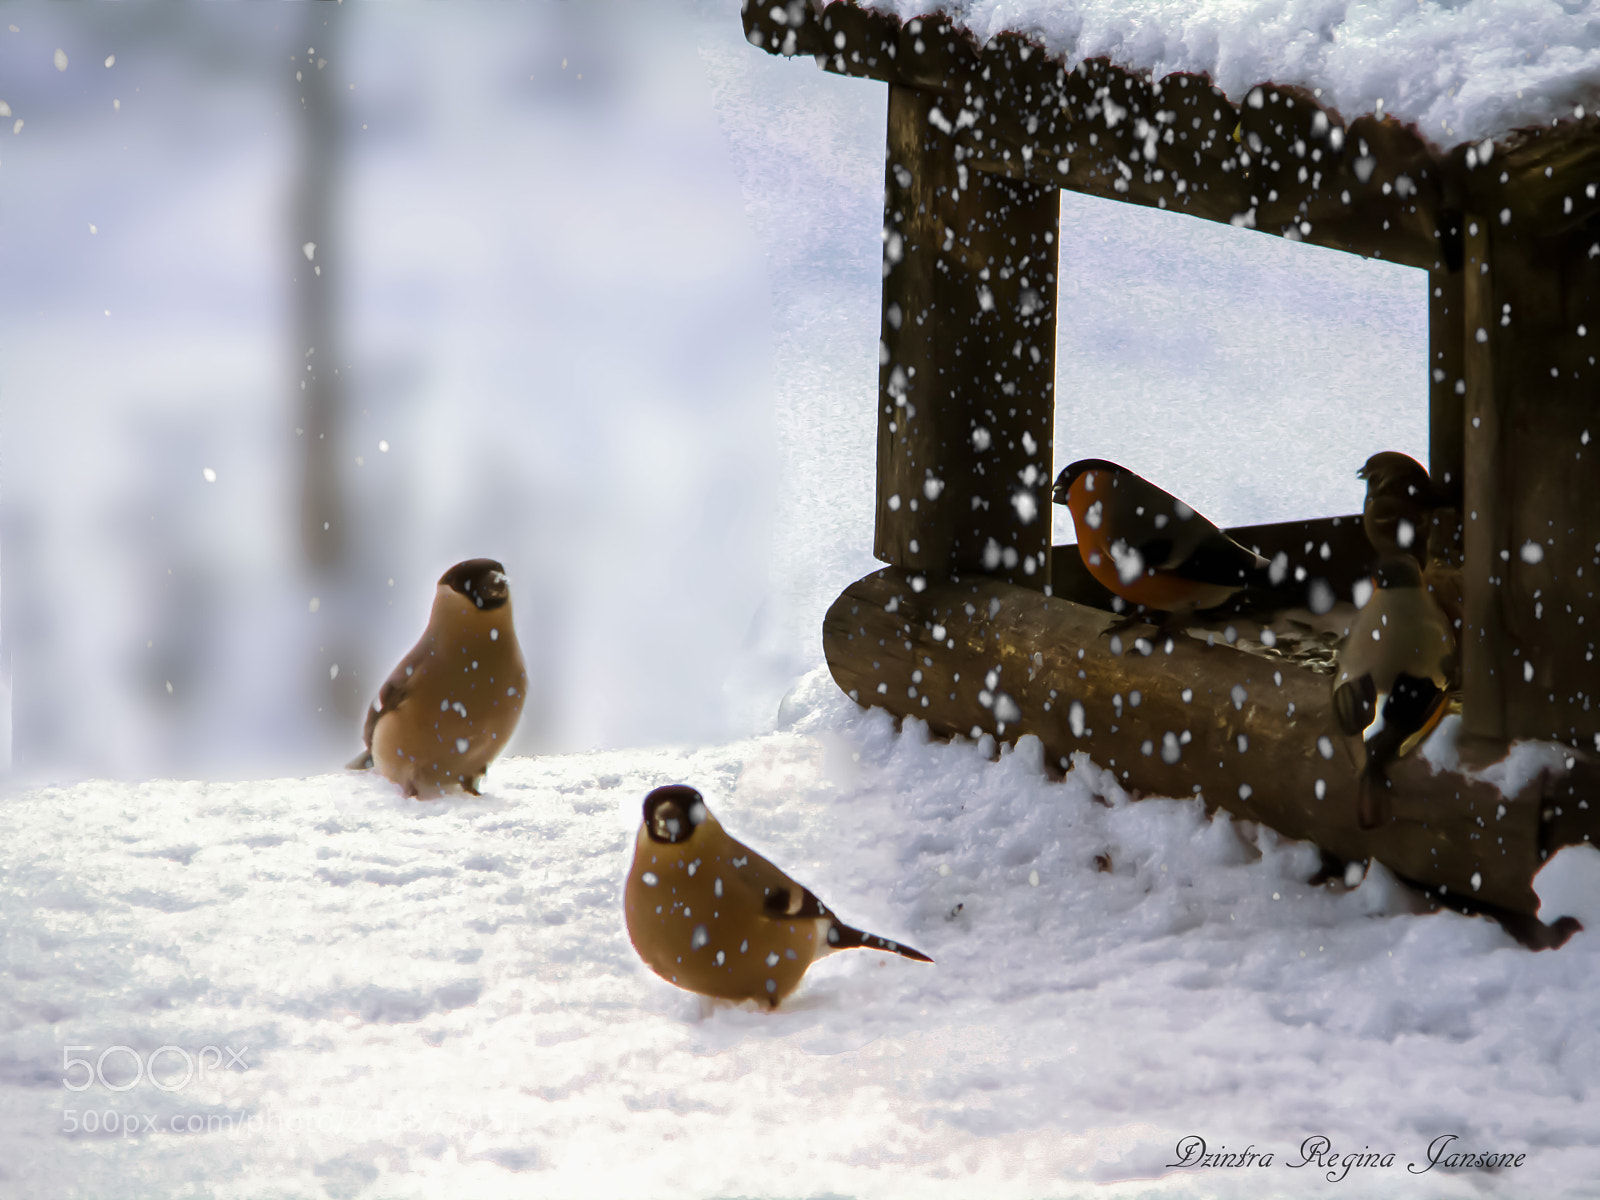 Canon EOS 7D sample photo. Bullfinch birds, bird feeder photography